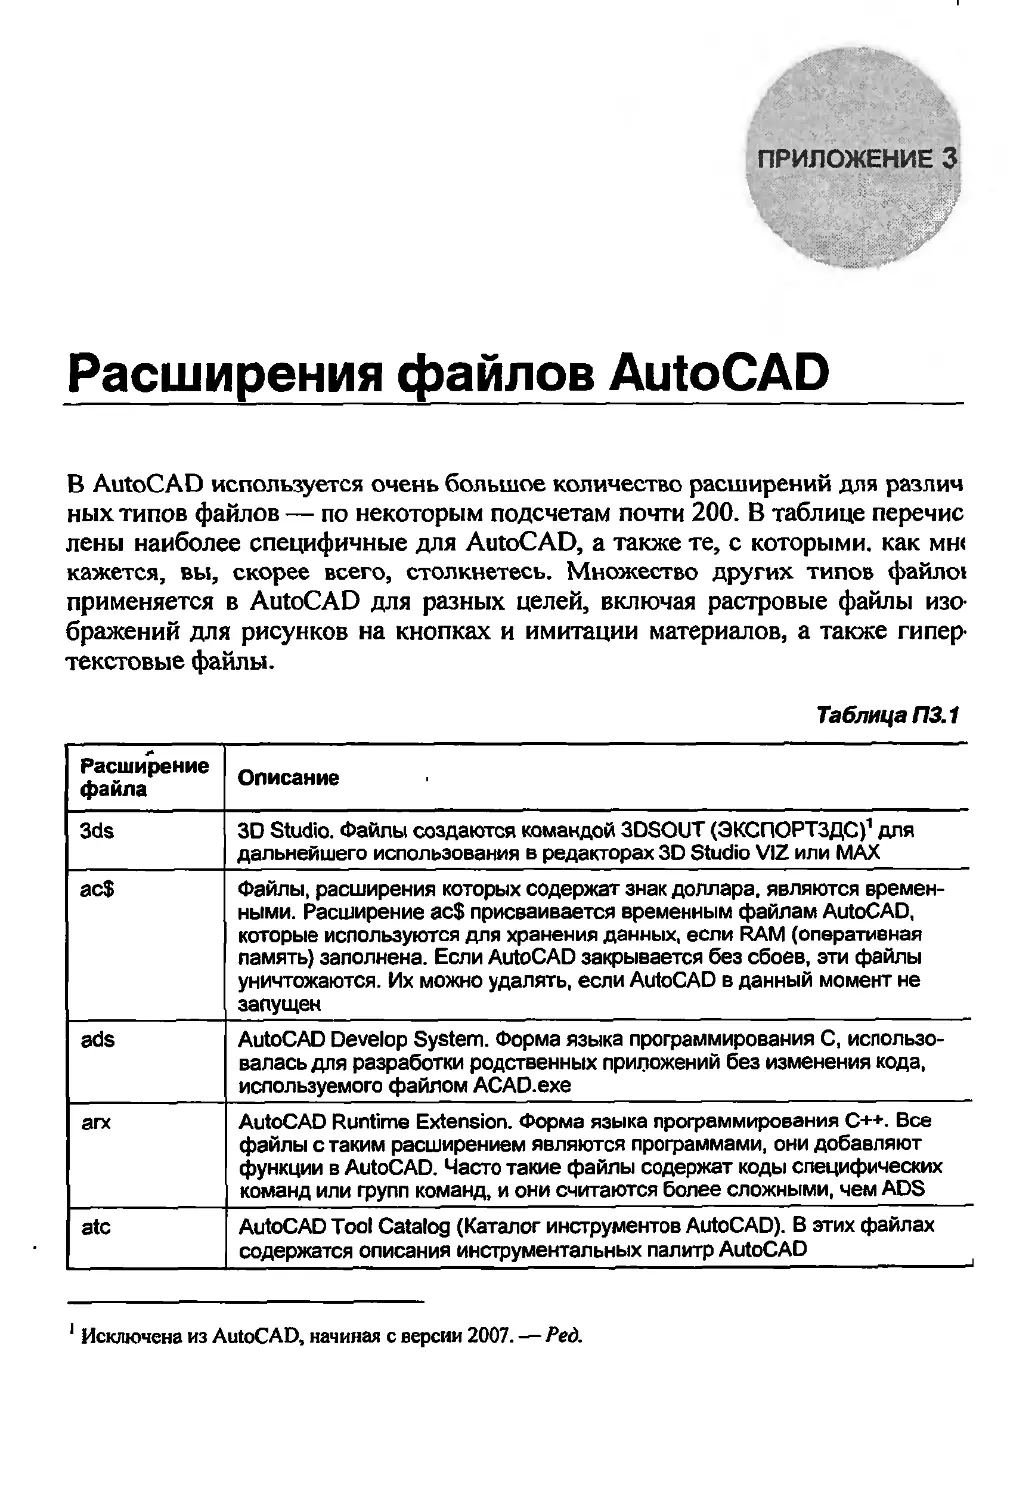 Приложение 3. Расширения файлов AutoCAD